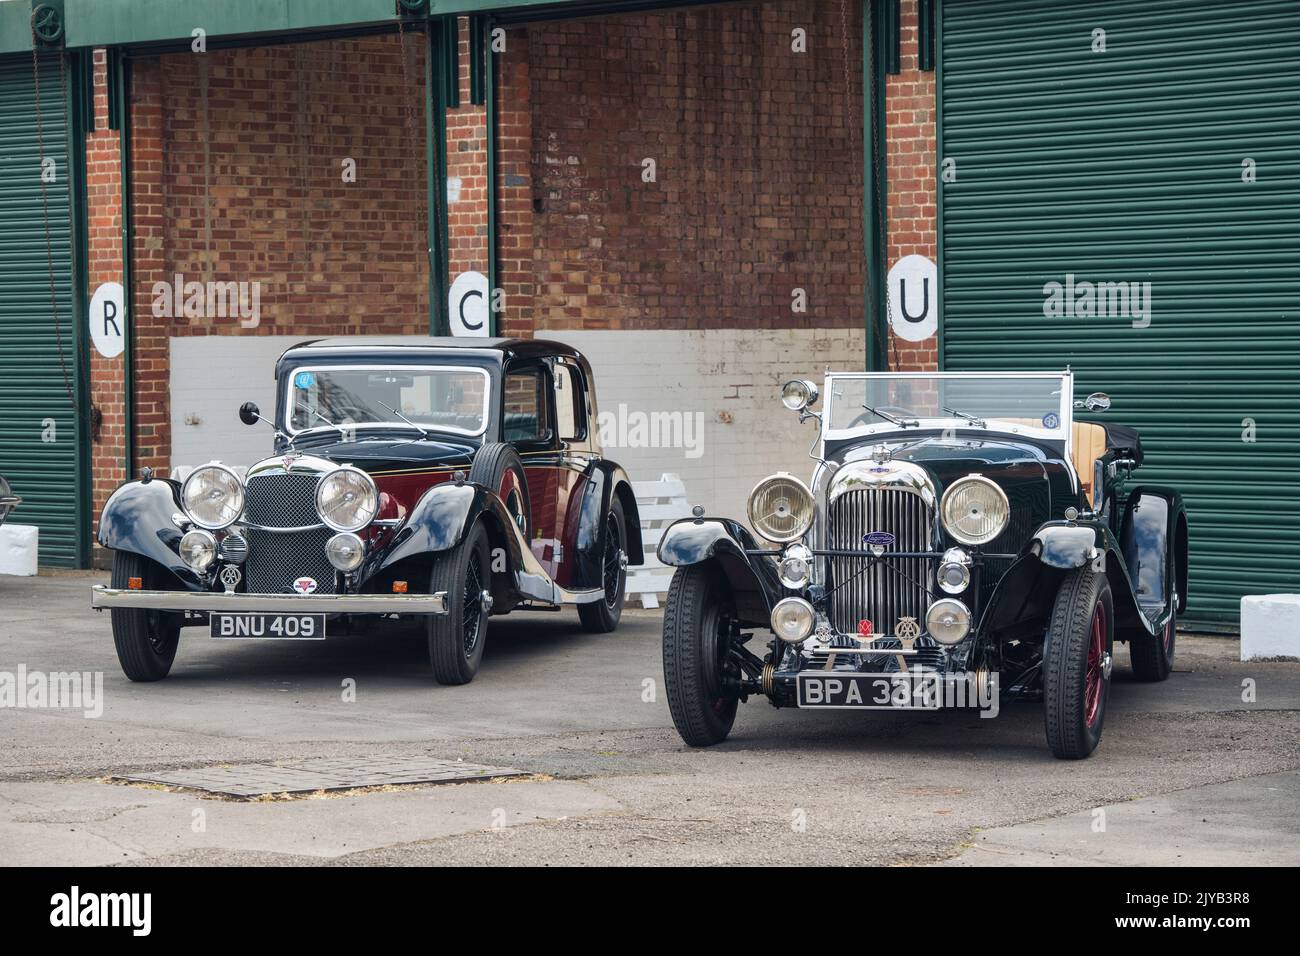 1935 Alvis e 1933 Lagonda al Bicester Heritage Centre. Oxfordshire, Inghilterra. Filtro vintage applicato Foto Stock